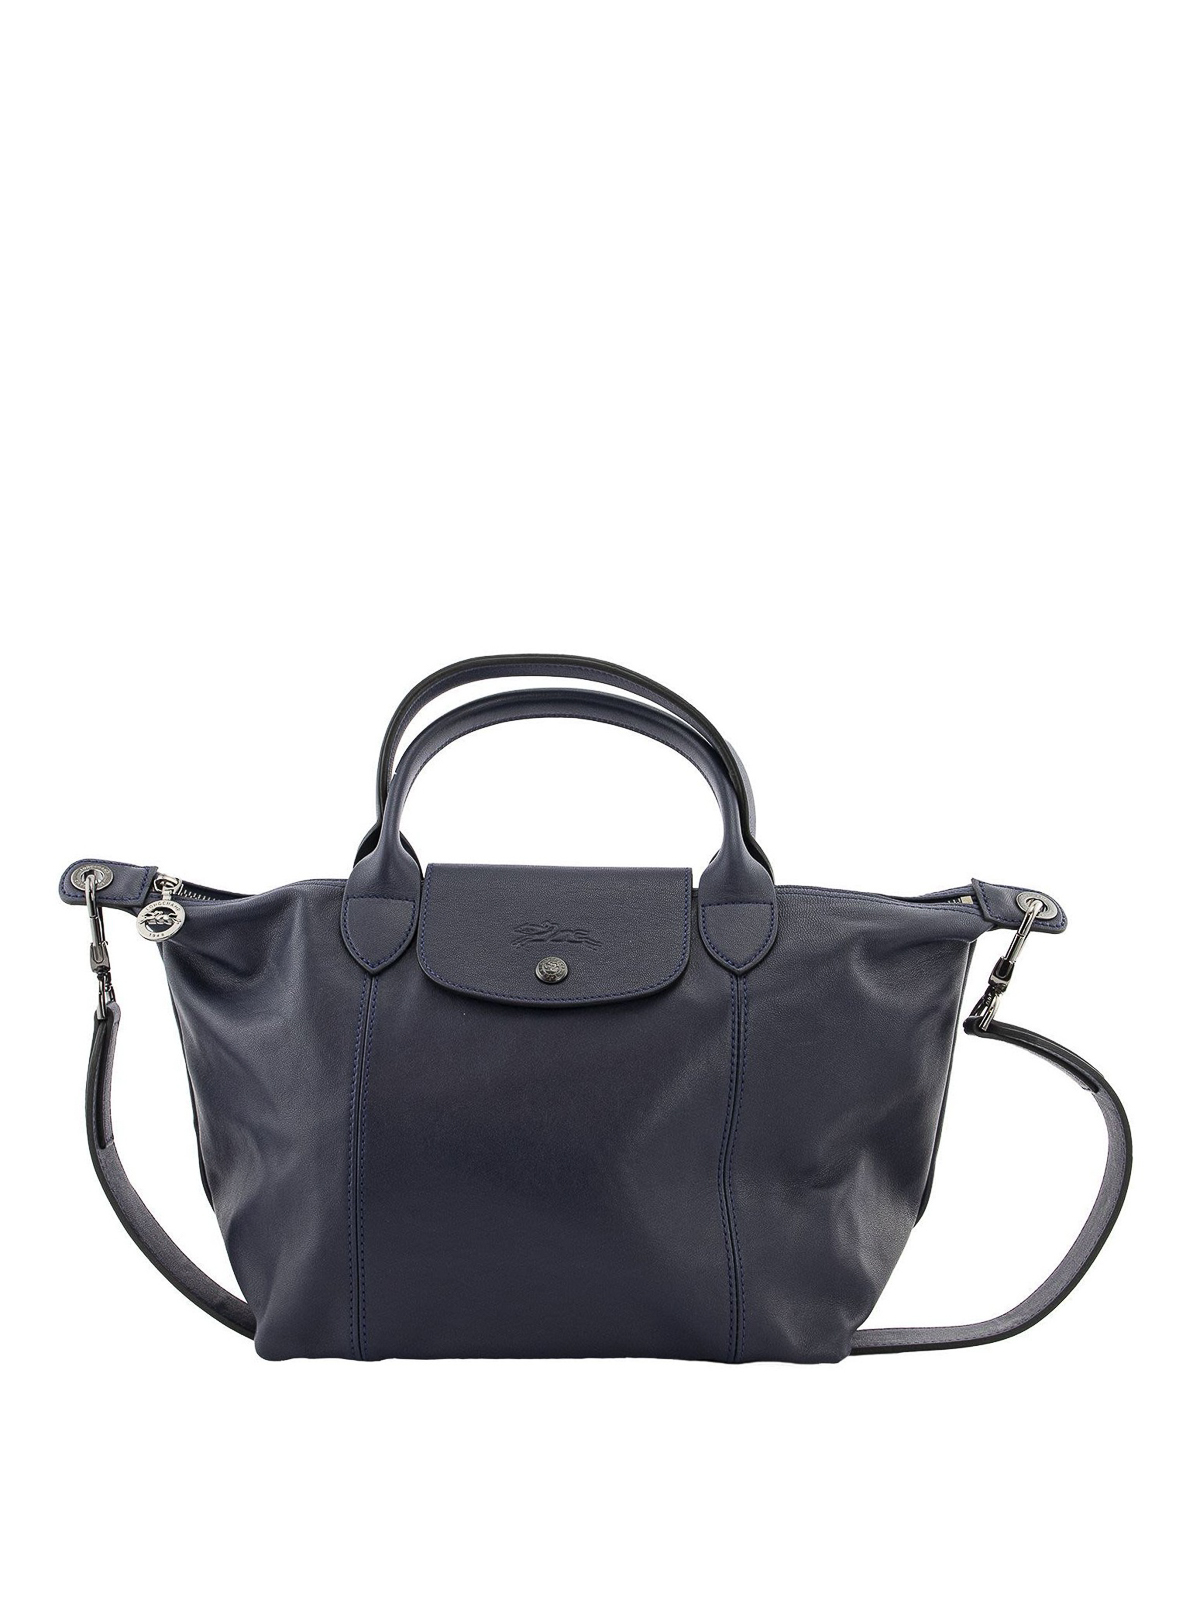 Longchamp, Bags, Longchamp Le Pliage Cuir Leather Shoulder Bag